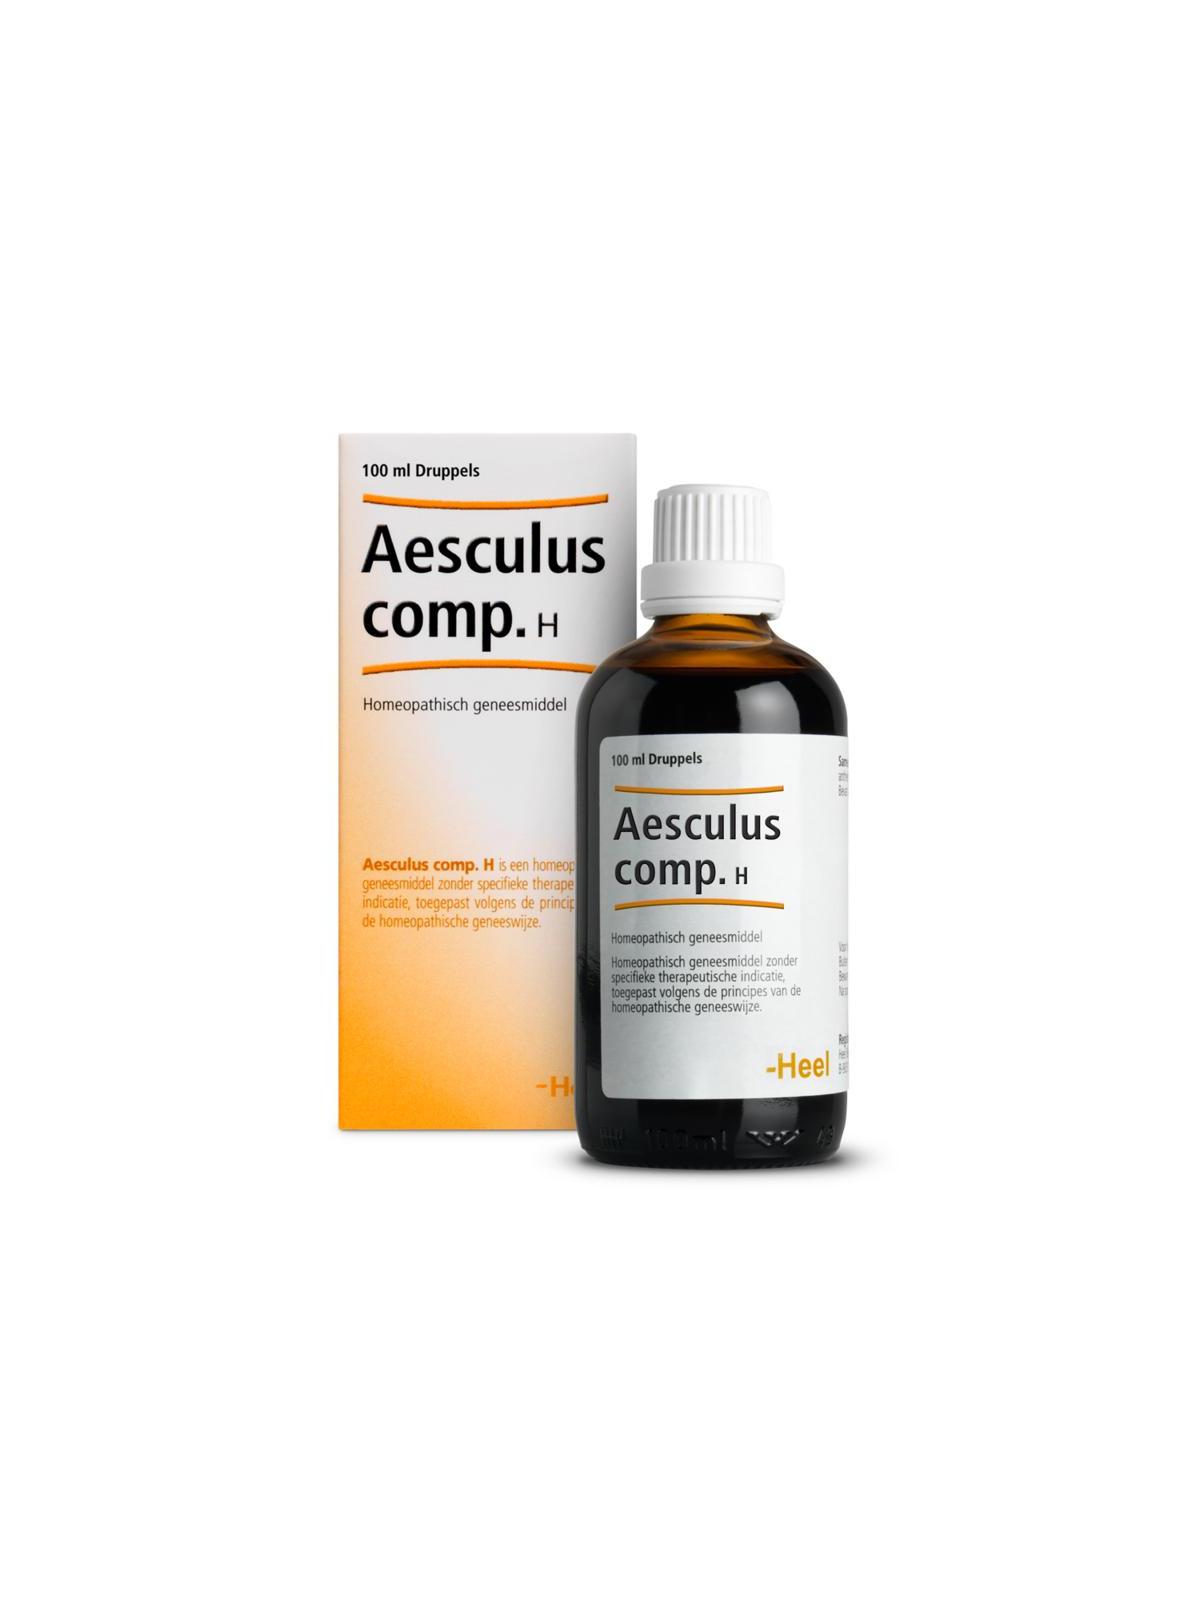 Aesculus compositum H